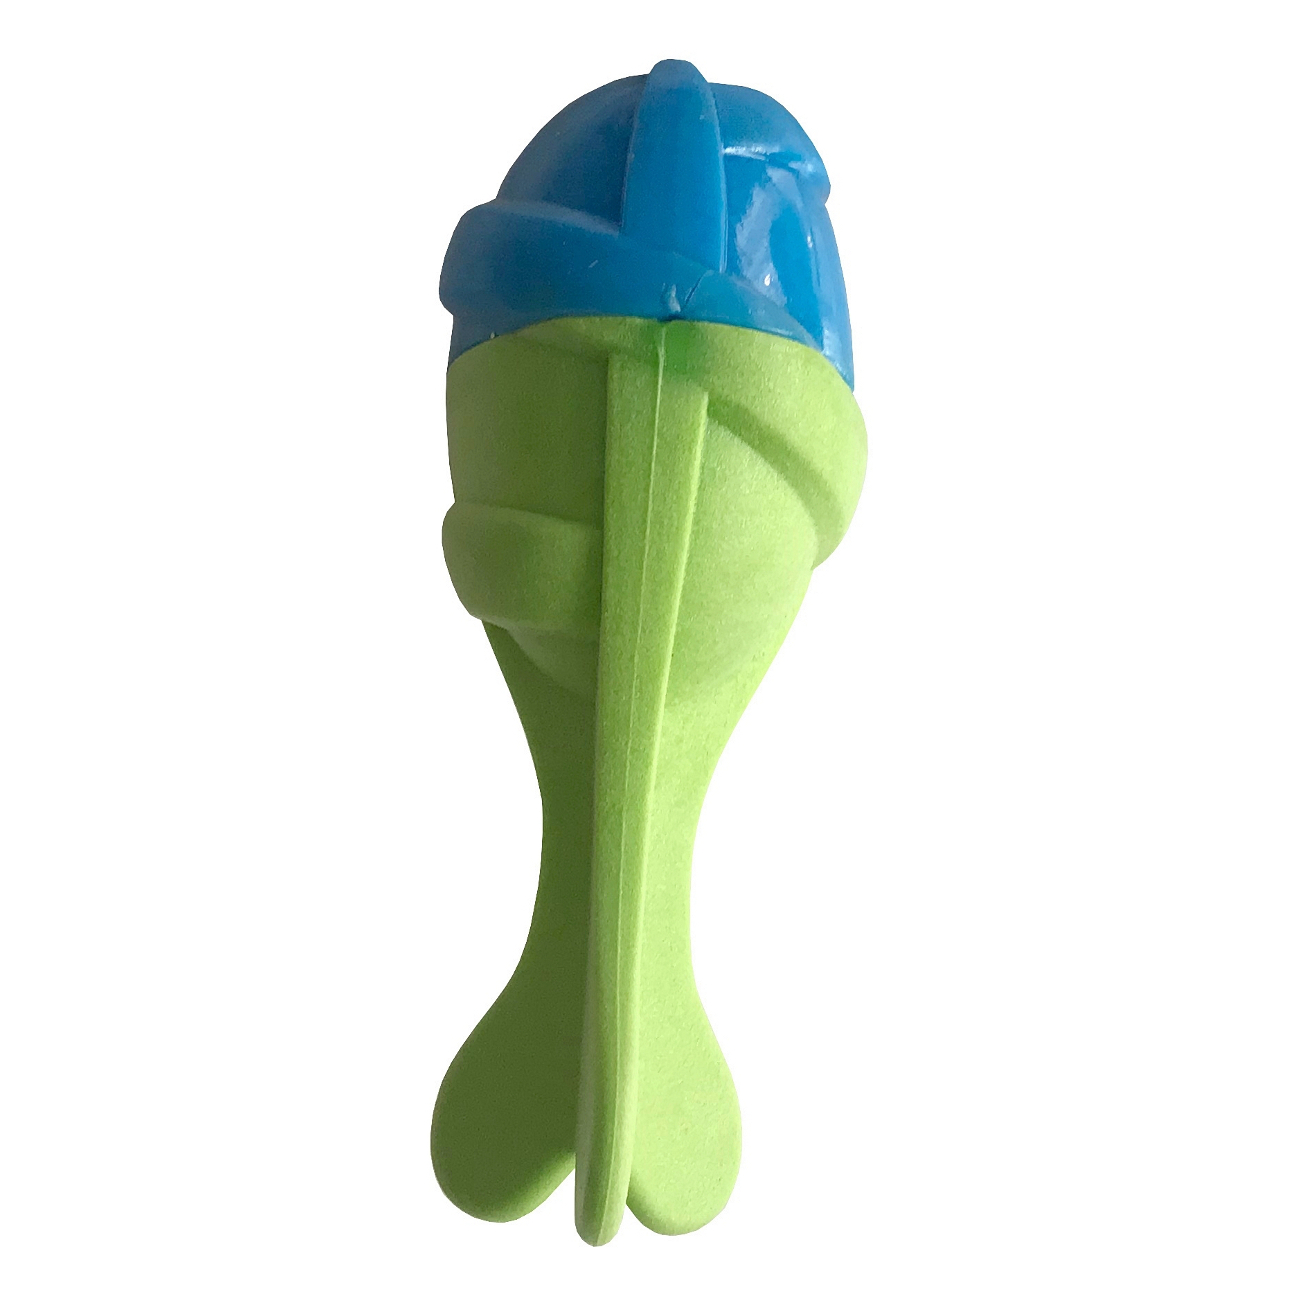 CLZ205 Sağlam Plastik Sesli Balık Köpek Oyuncağı 13 x 5 cm Mavi Yeşil